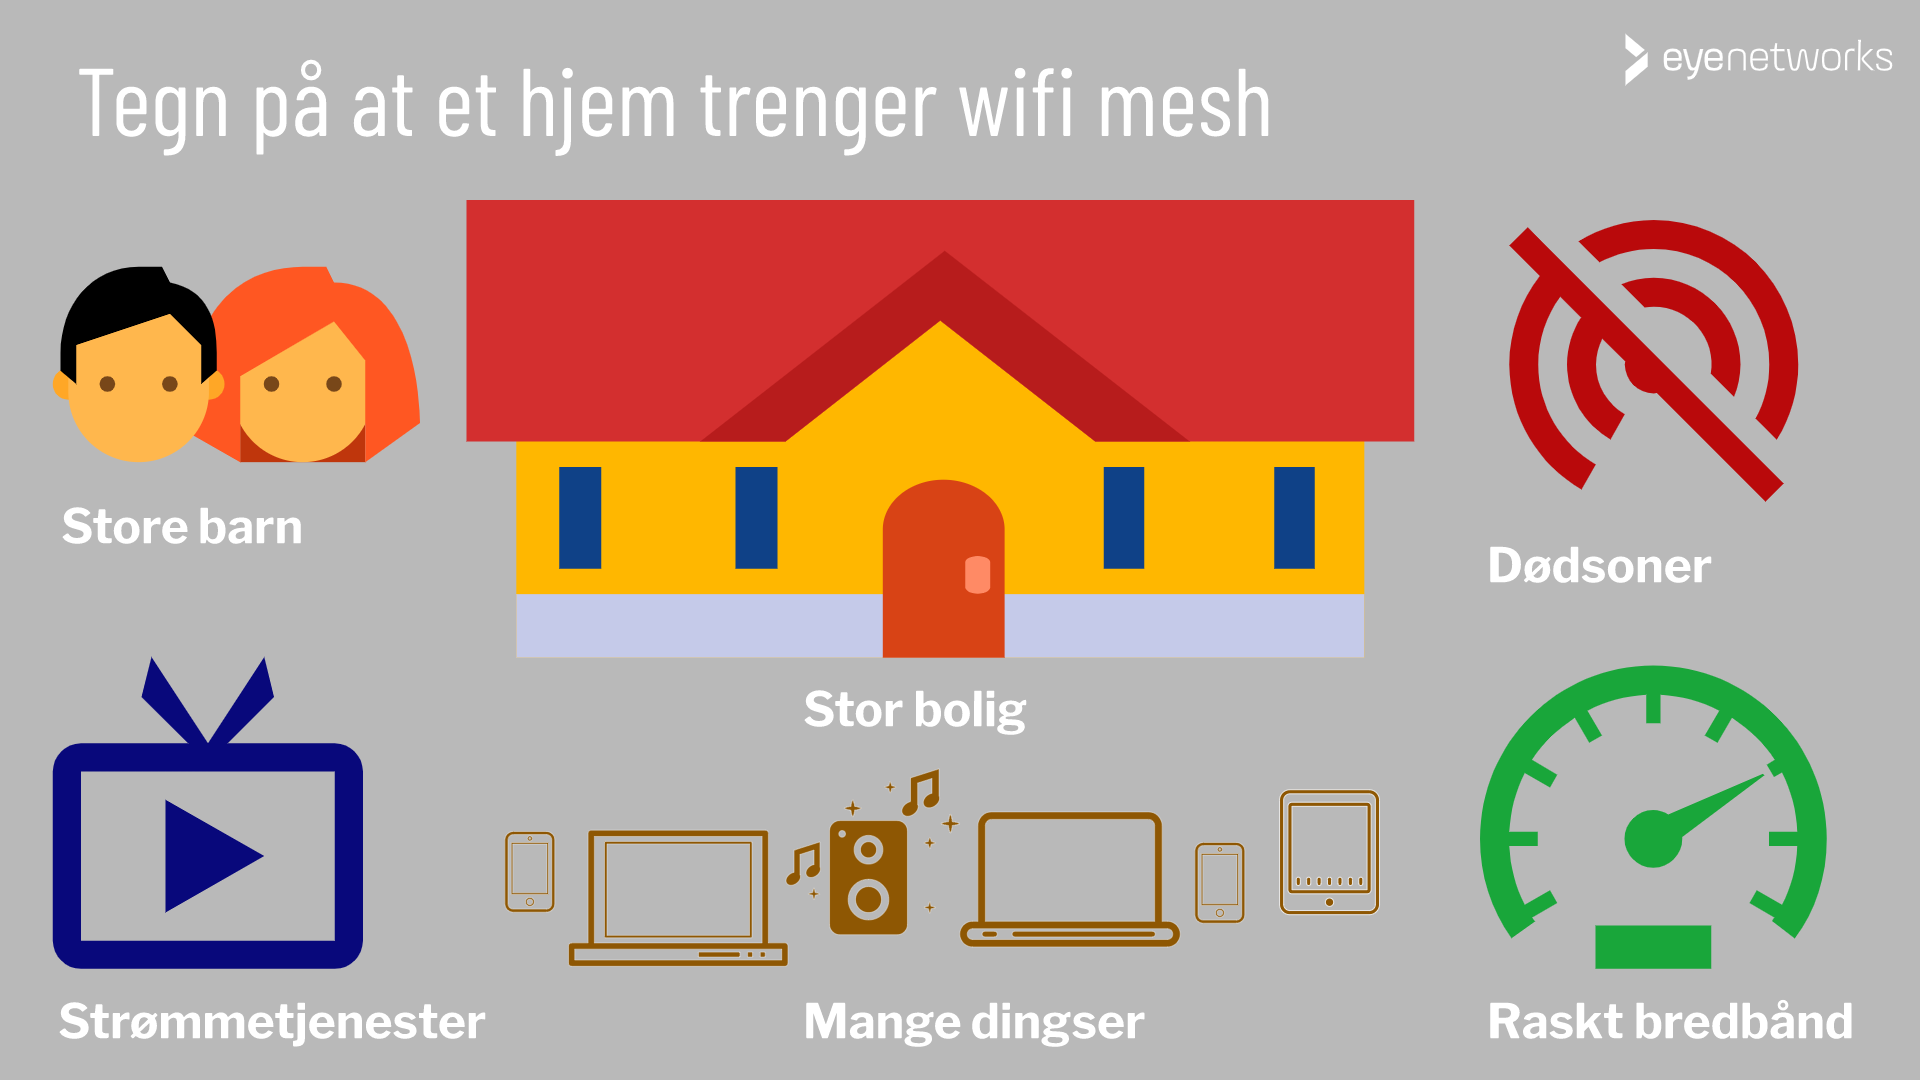 Tegn på at et hjem trenger wifi mesh: Stor bolig, større barn, strømmeabonnement, mange dingser, dødsoner, raskt bredbånd